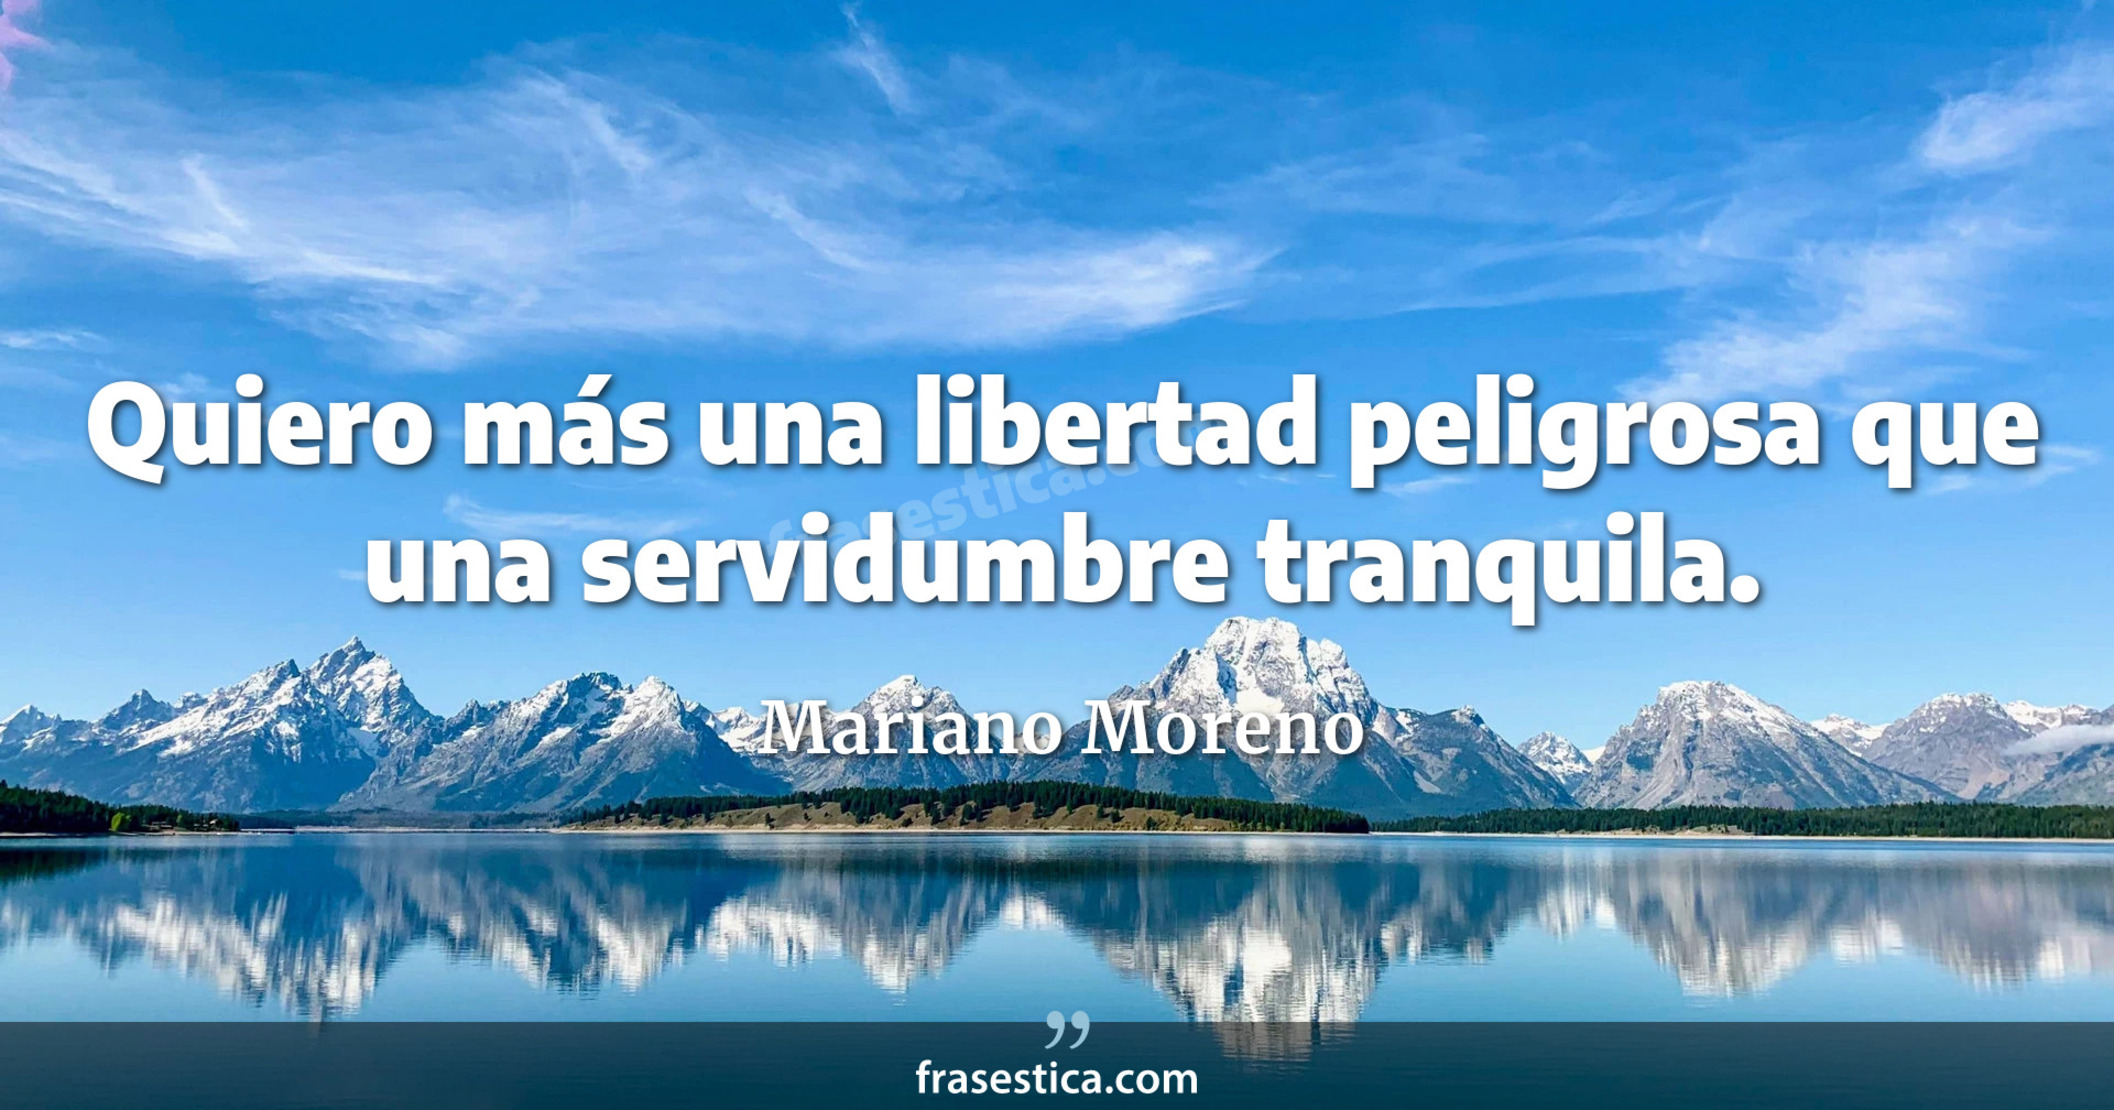 Quiero más una libertad peligrosa  que una servidumbre tranquila. - Mariano Moreno